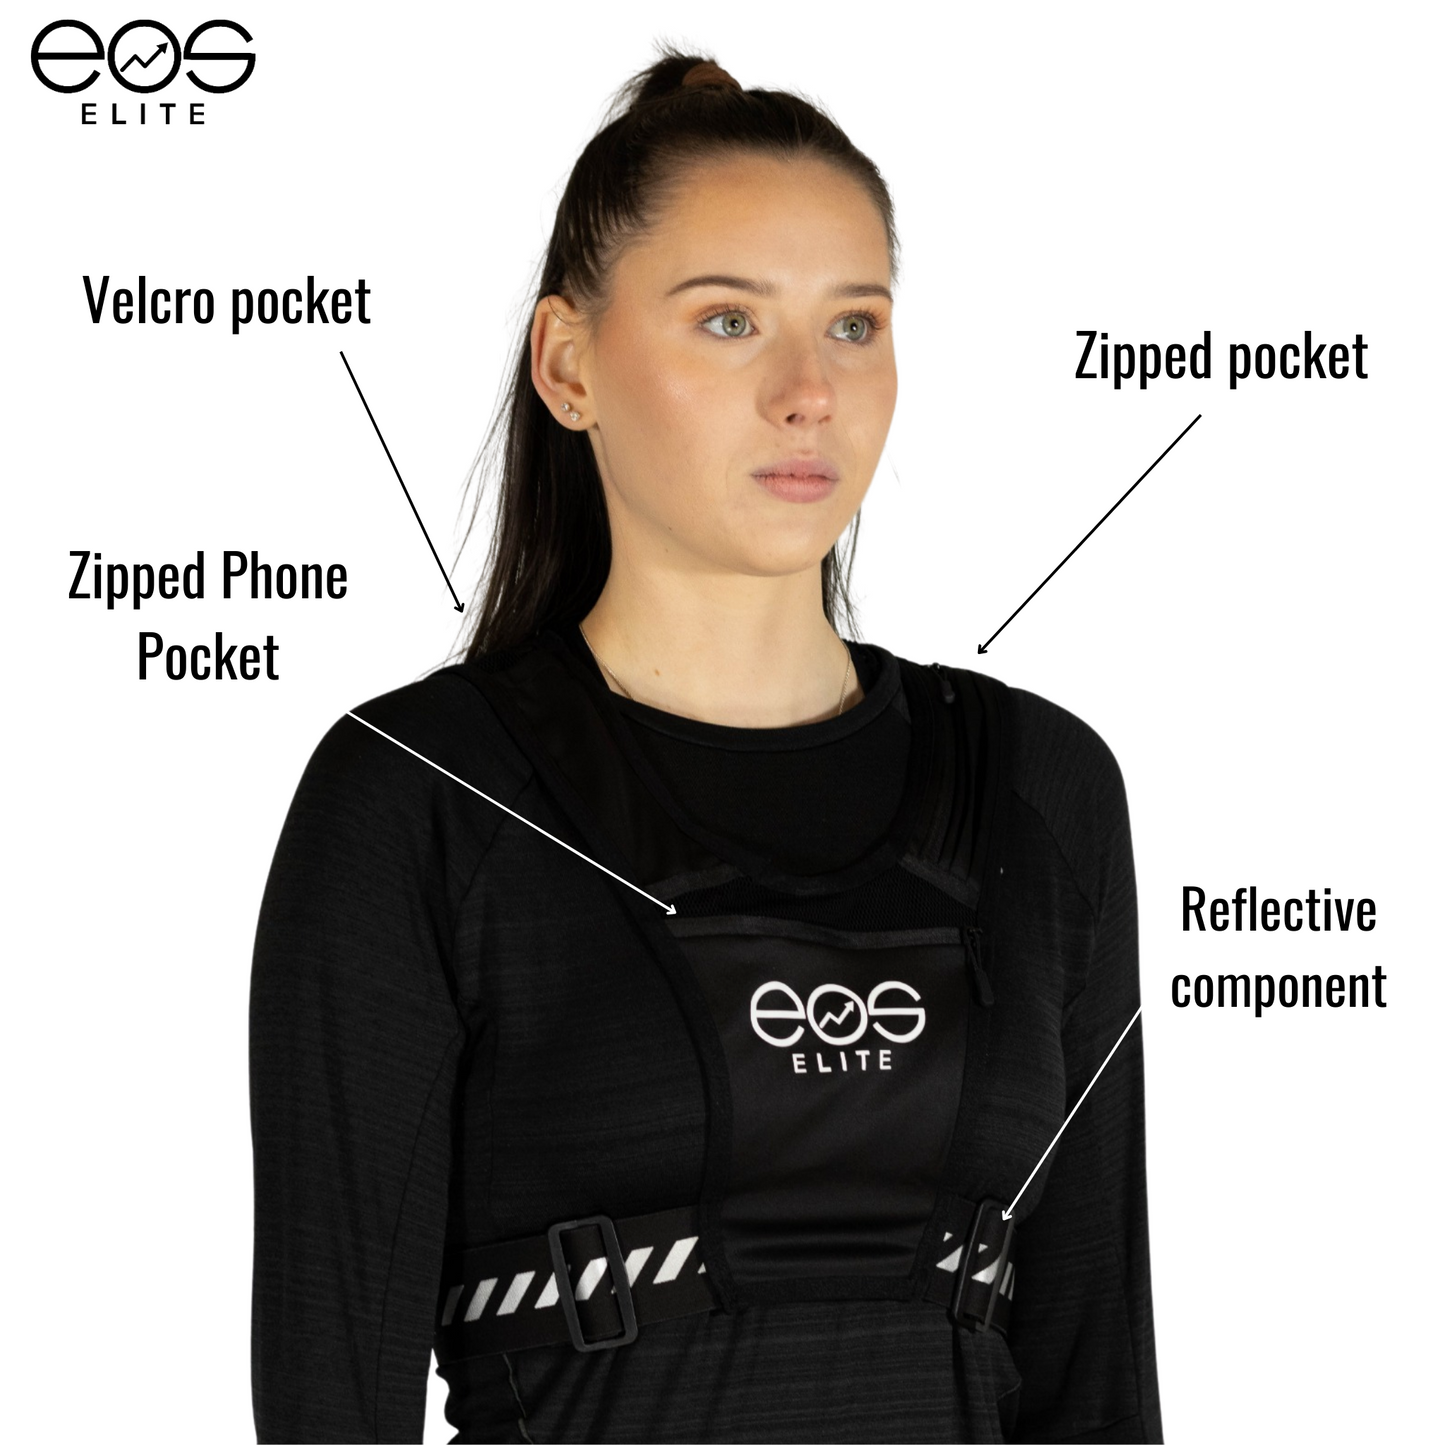 Eos UltraLight Running Vest